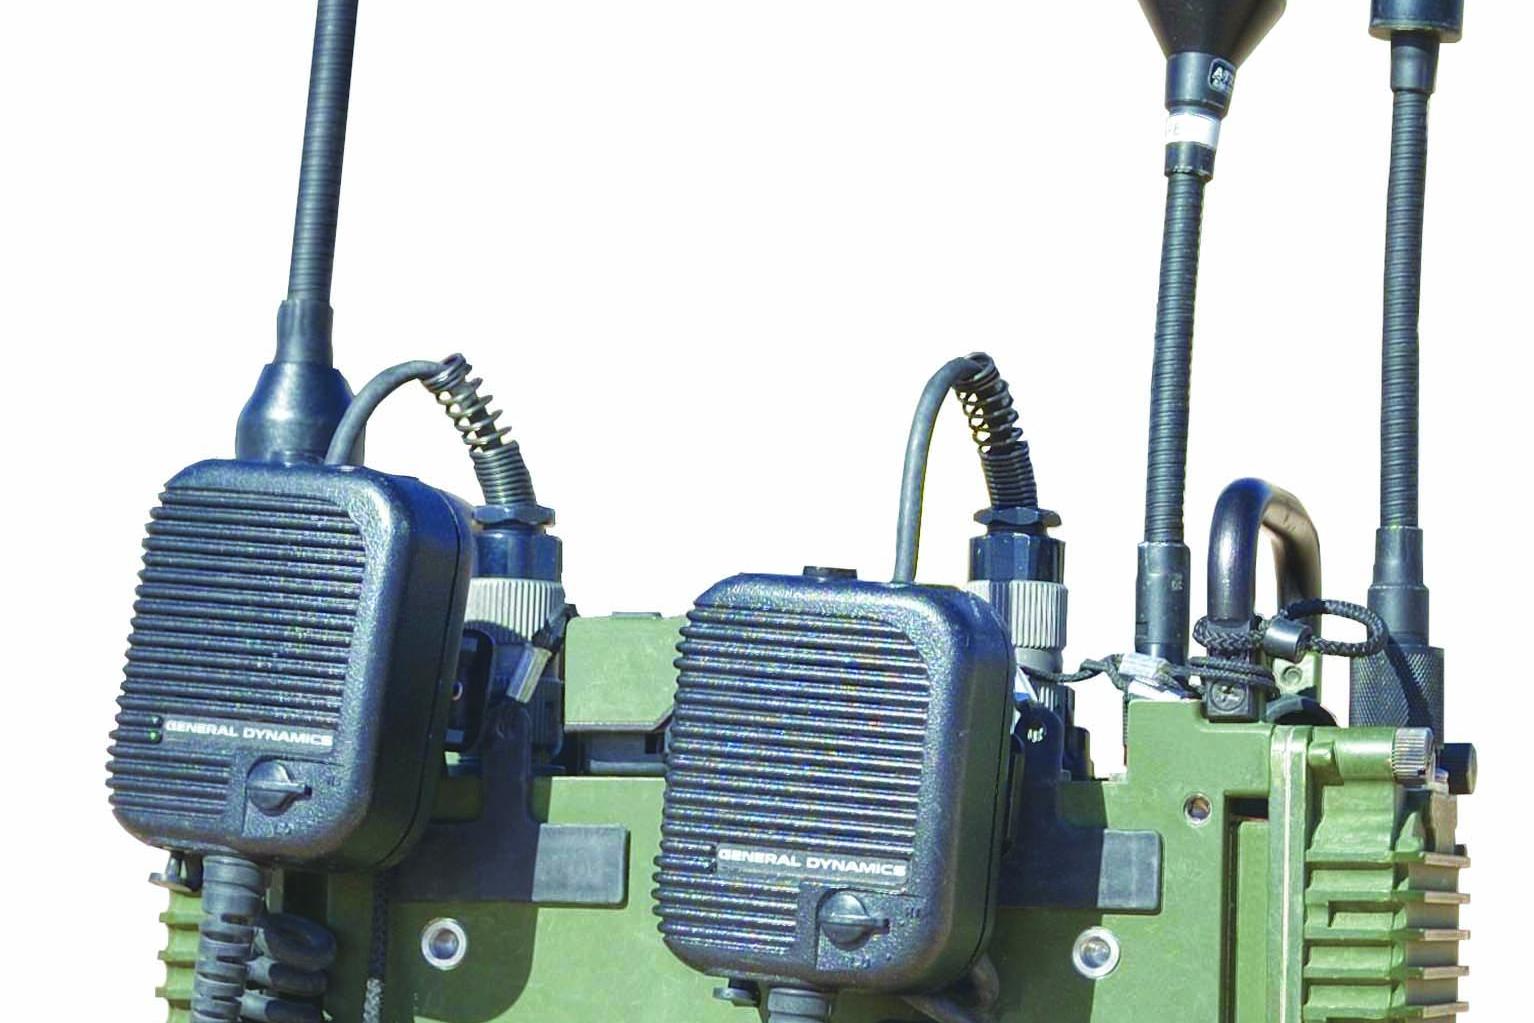 قامت General Dynamics Mission Systems بتسليم أكثر من 5,000 جهاز راديو تشبيكي محمول على الظهر AN/PRC-155 Manpack   الجيش الأميركي